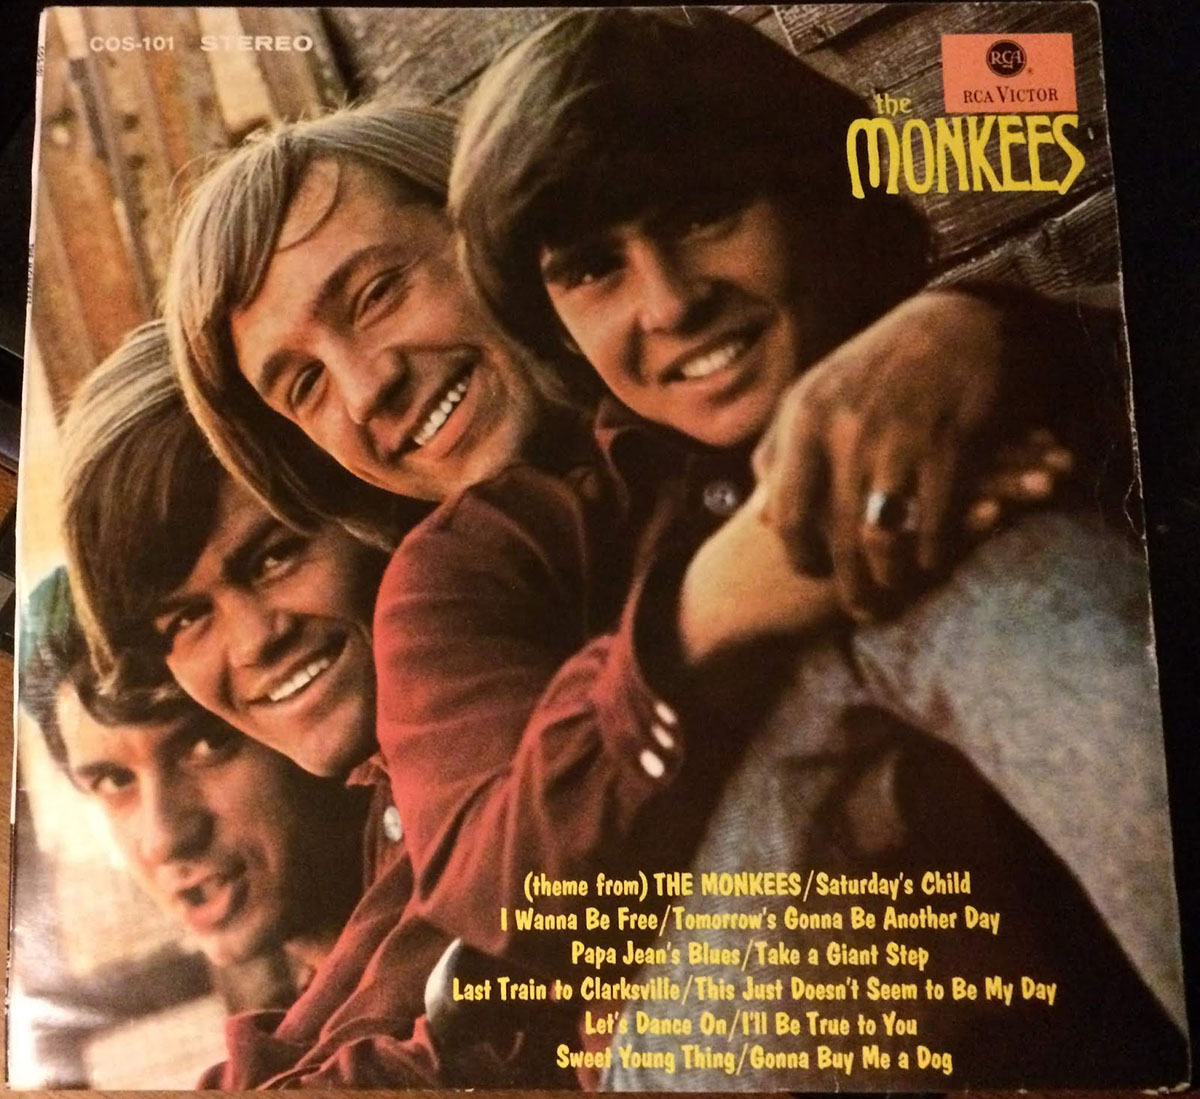 Couverture de l'album du même nom par The Monkees